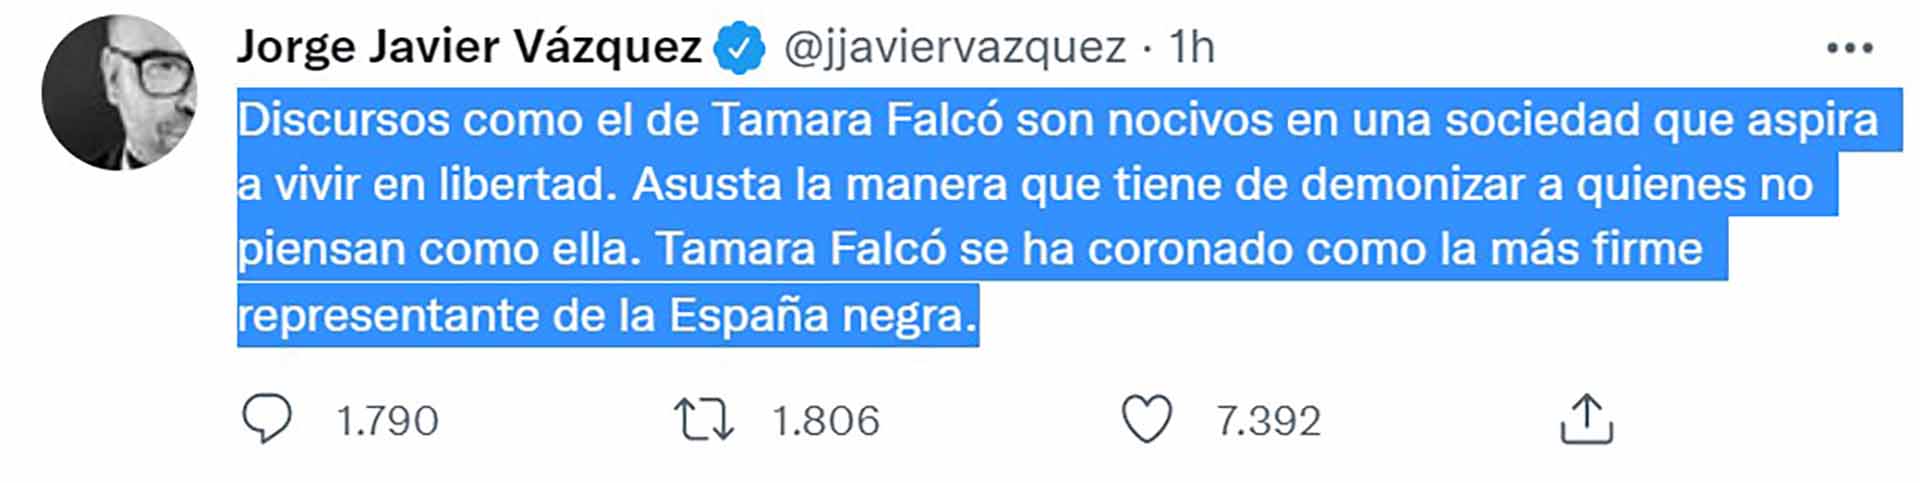 Jorge Javier Vázquez, sobre Tamara Falcó: "Asusta la manera que tiene de demonizar a quienes no piensan como ella"